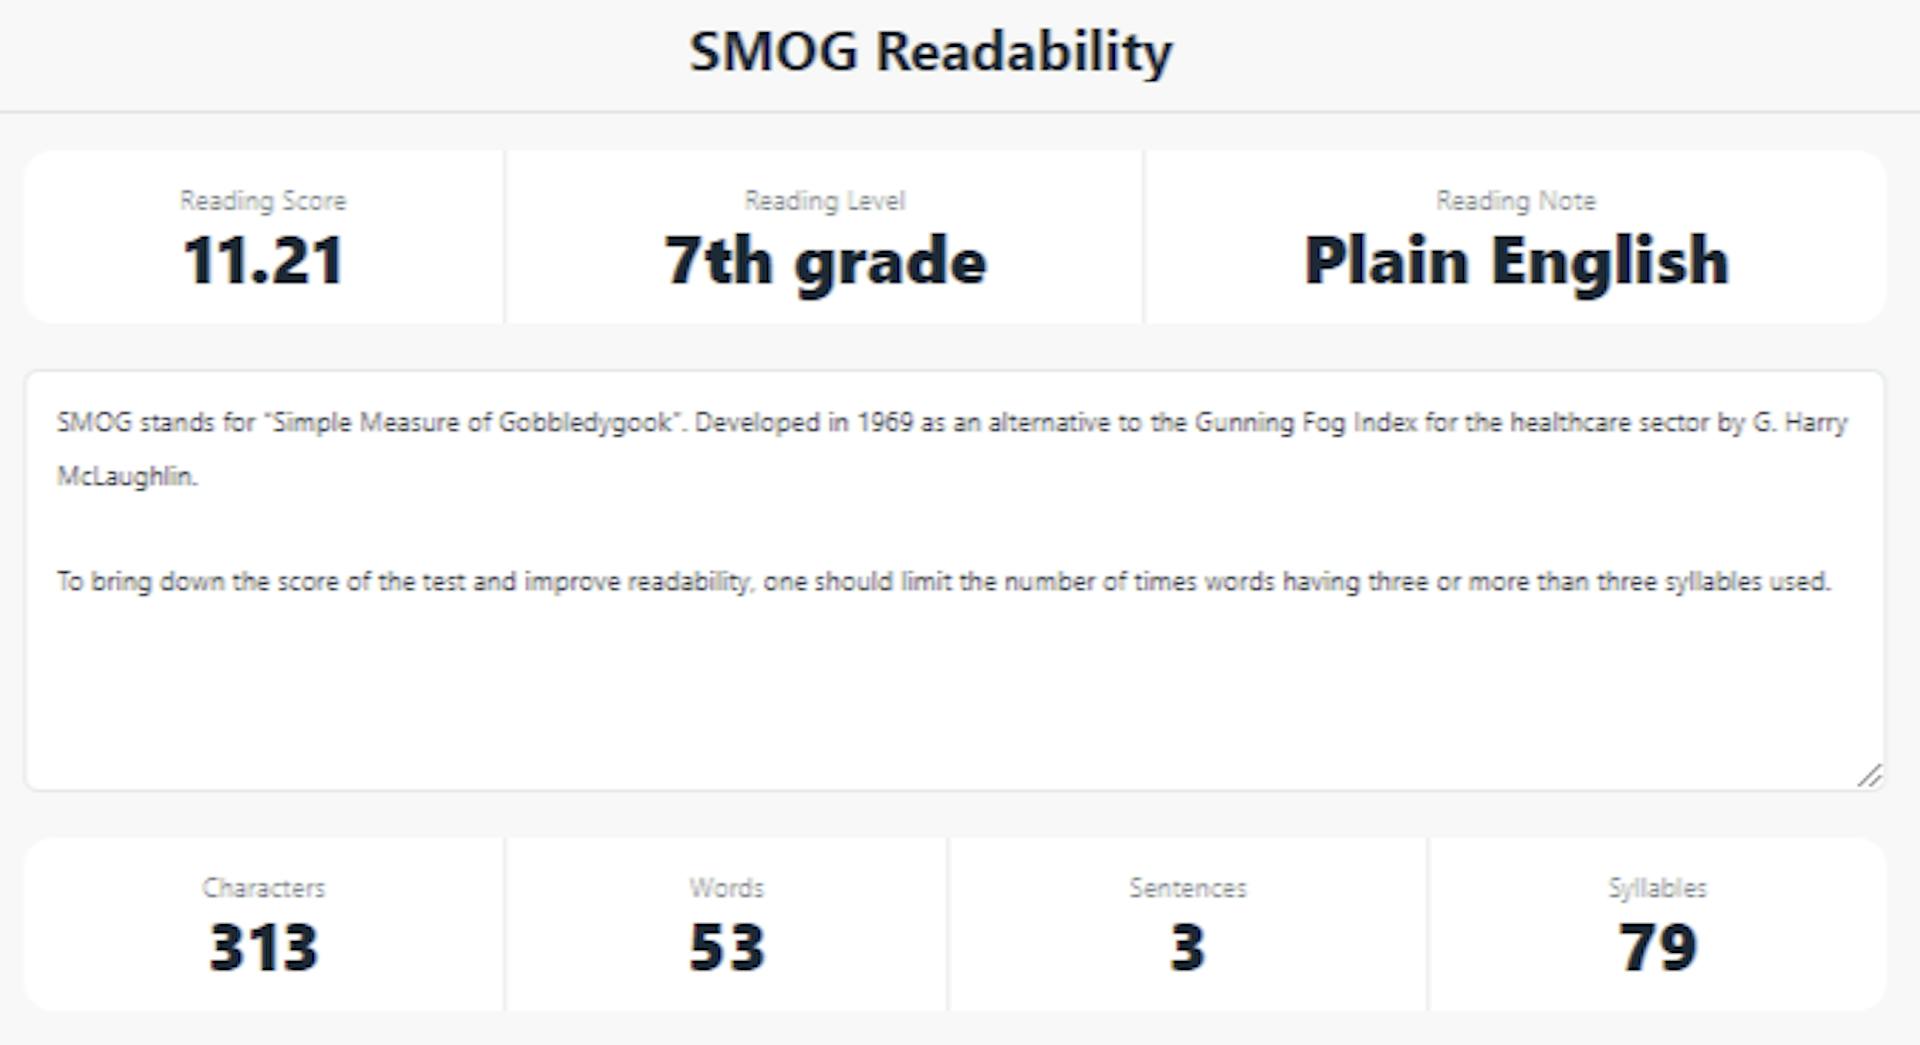 SMOG Readability